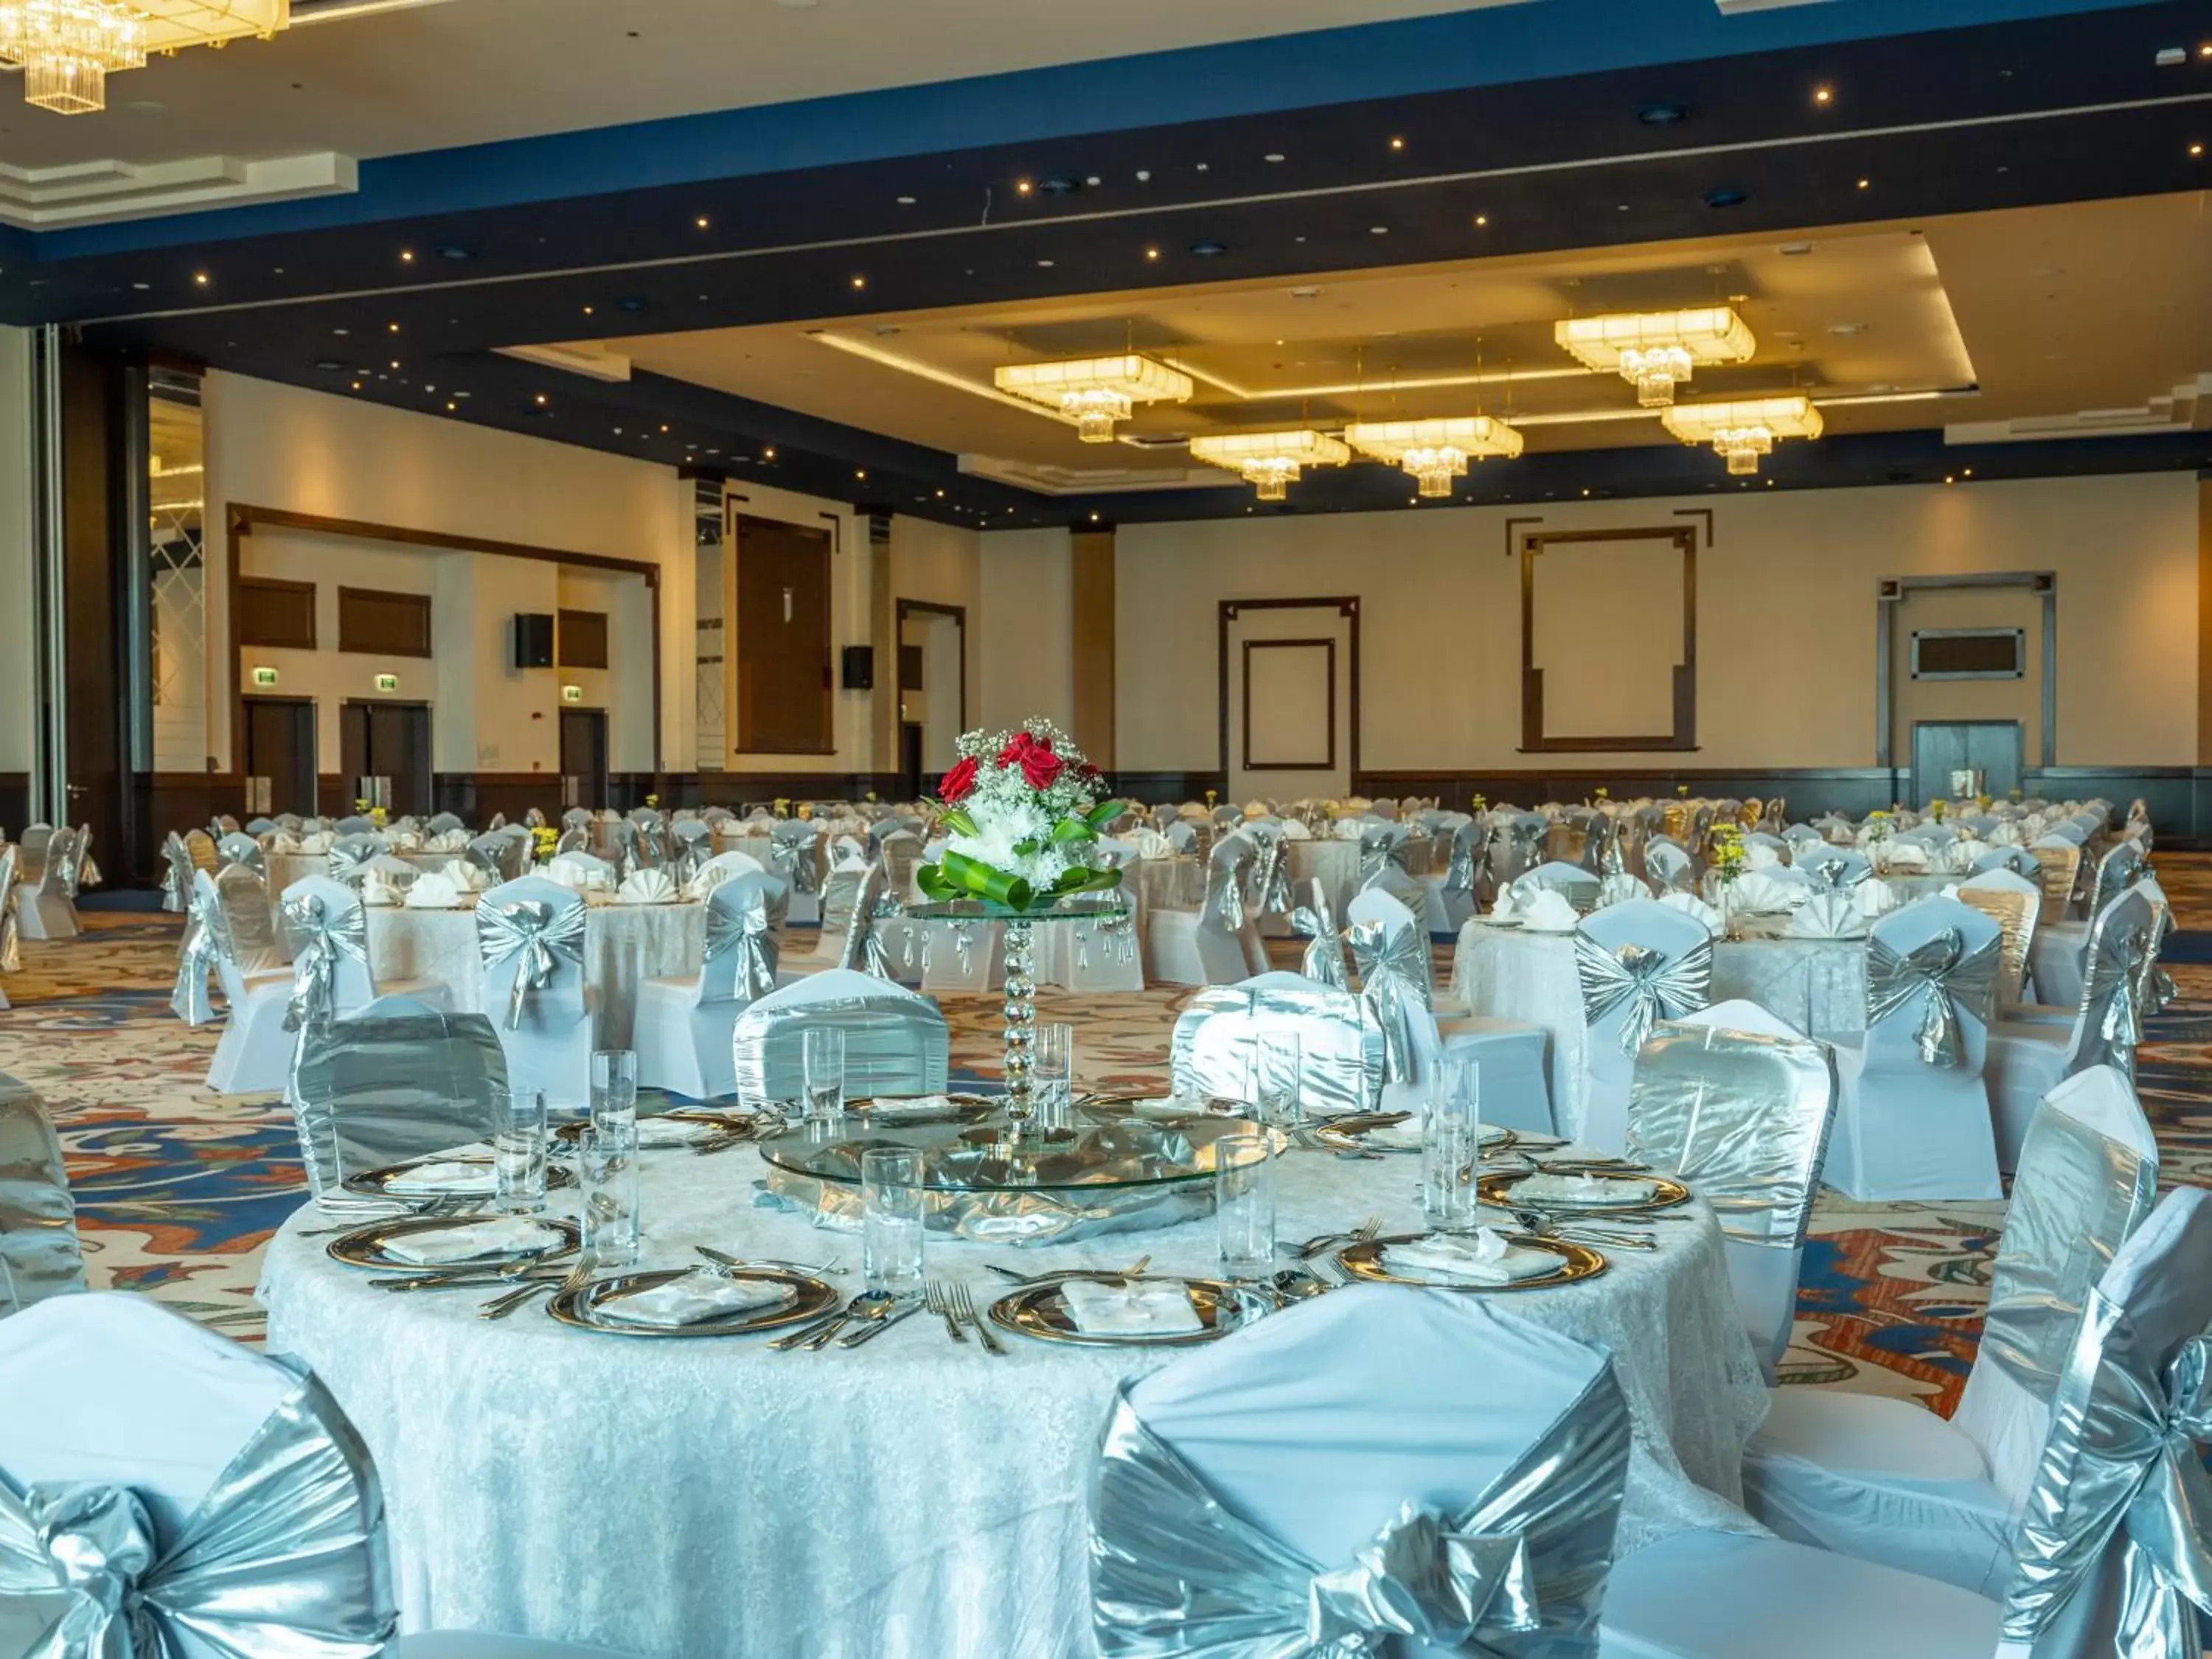 Banquet/Function facilities, Banquet Facilities in Retaj Salwa Resort & Spa